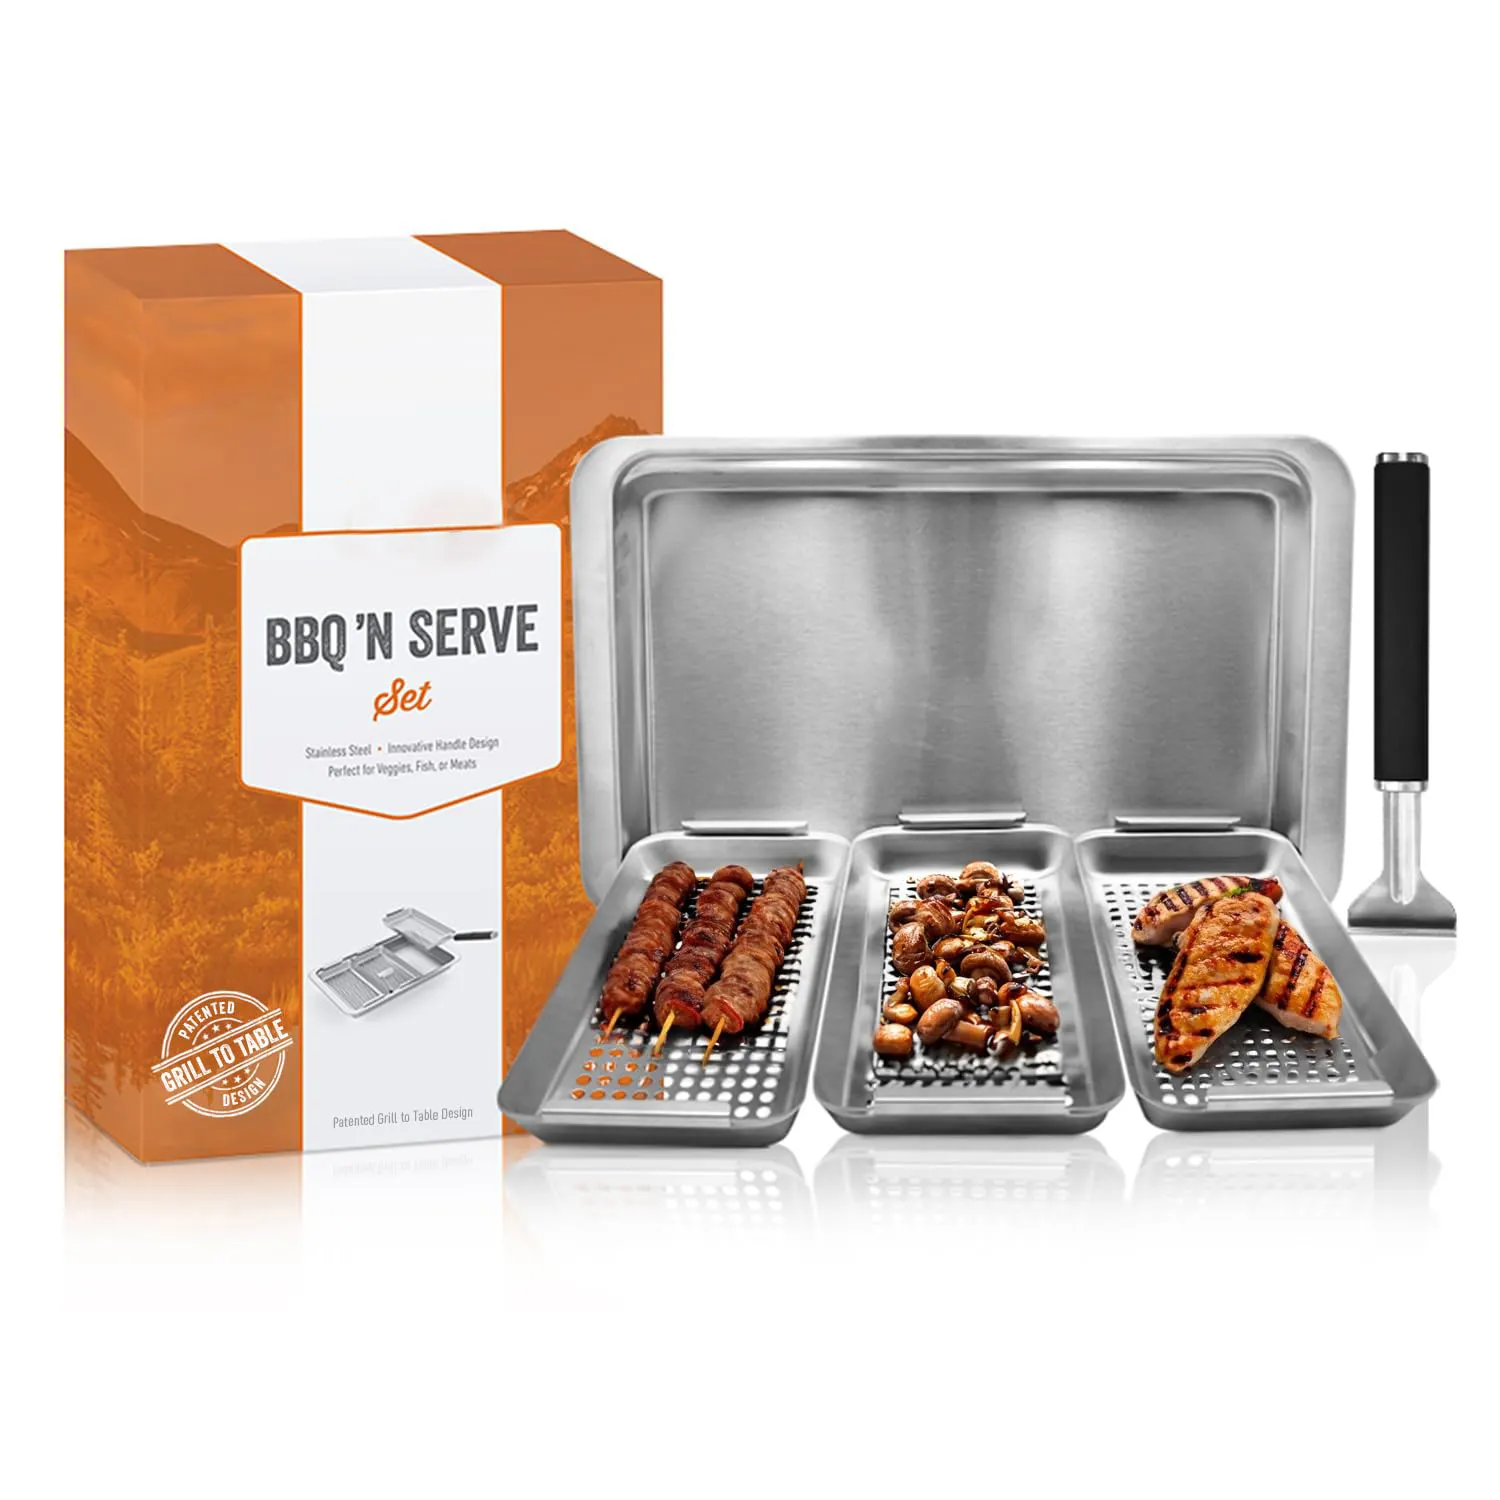 Hete Verkopende Grillmand Pan Set Usa Online Inclusief Handvat 3 Barbecue Manden Lade Voor Het Grillen Van Visgroenten En Vlees